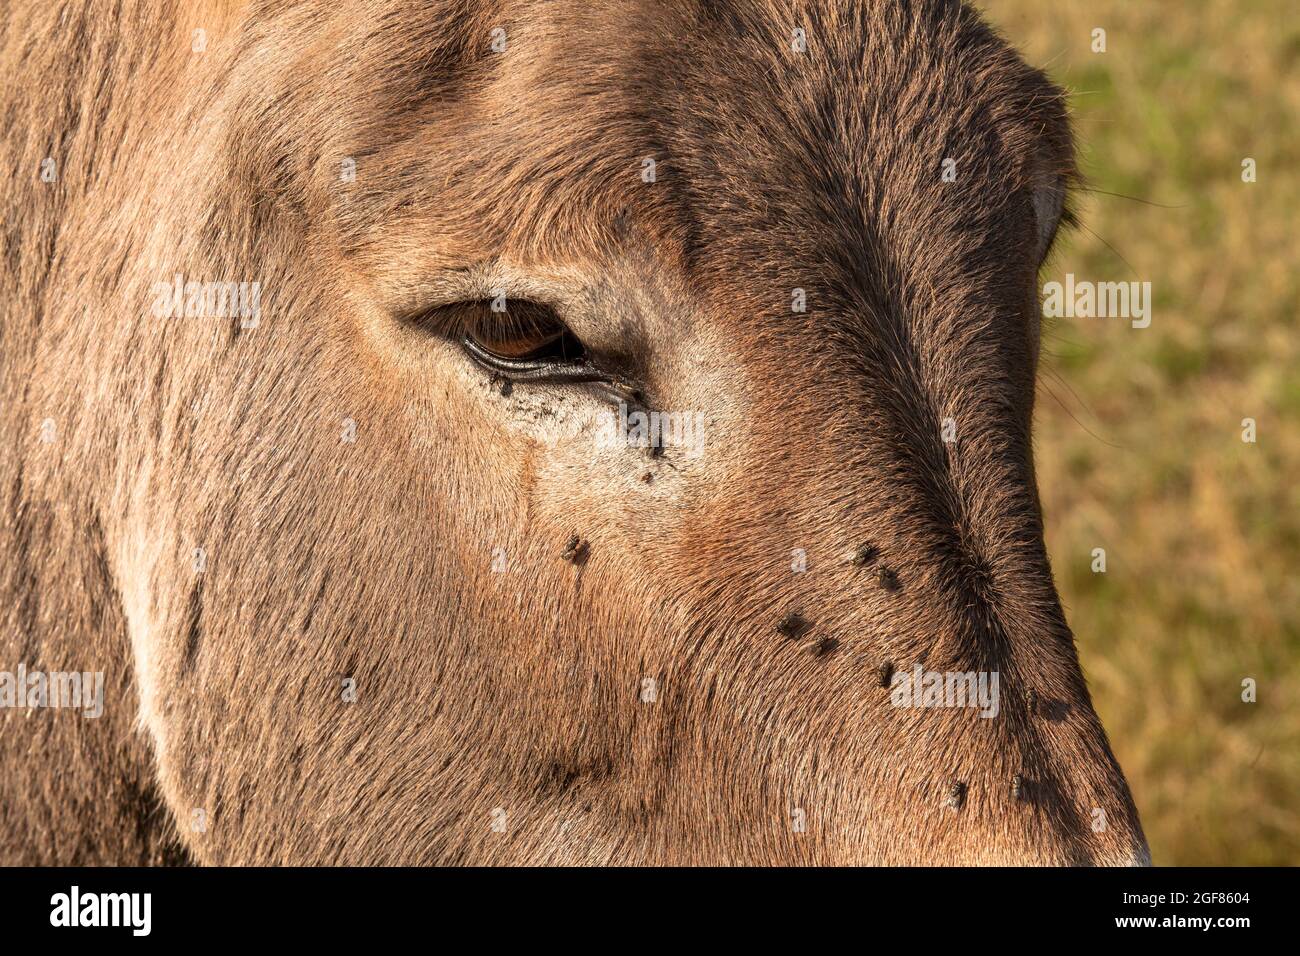 flies drink tear fluid at the eye of a donkey, Wahner Heath, Cologne, Germany.  Fliegen trinken am Auge eines Esels Traenenfluessigkeit, Wahner Heide, Stock Photo